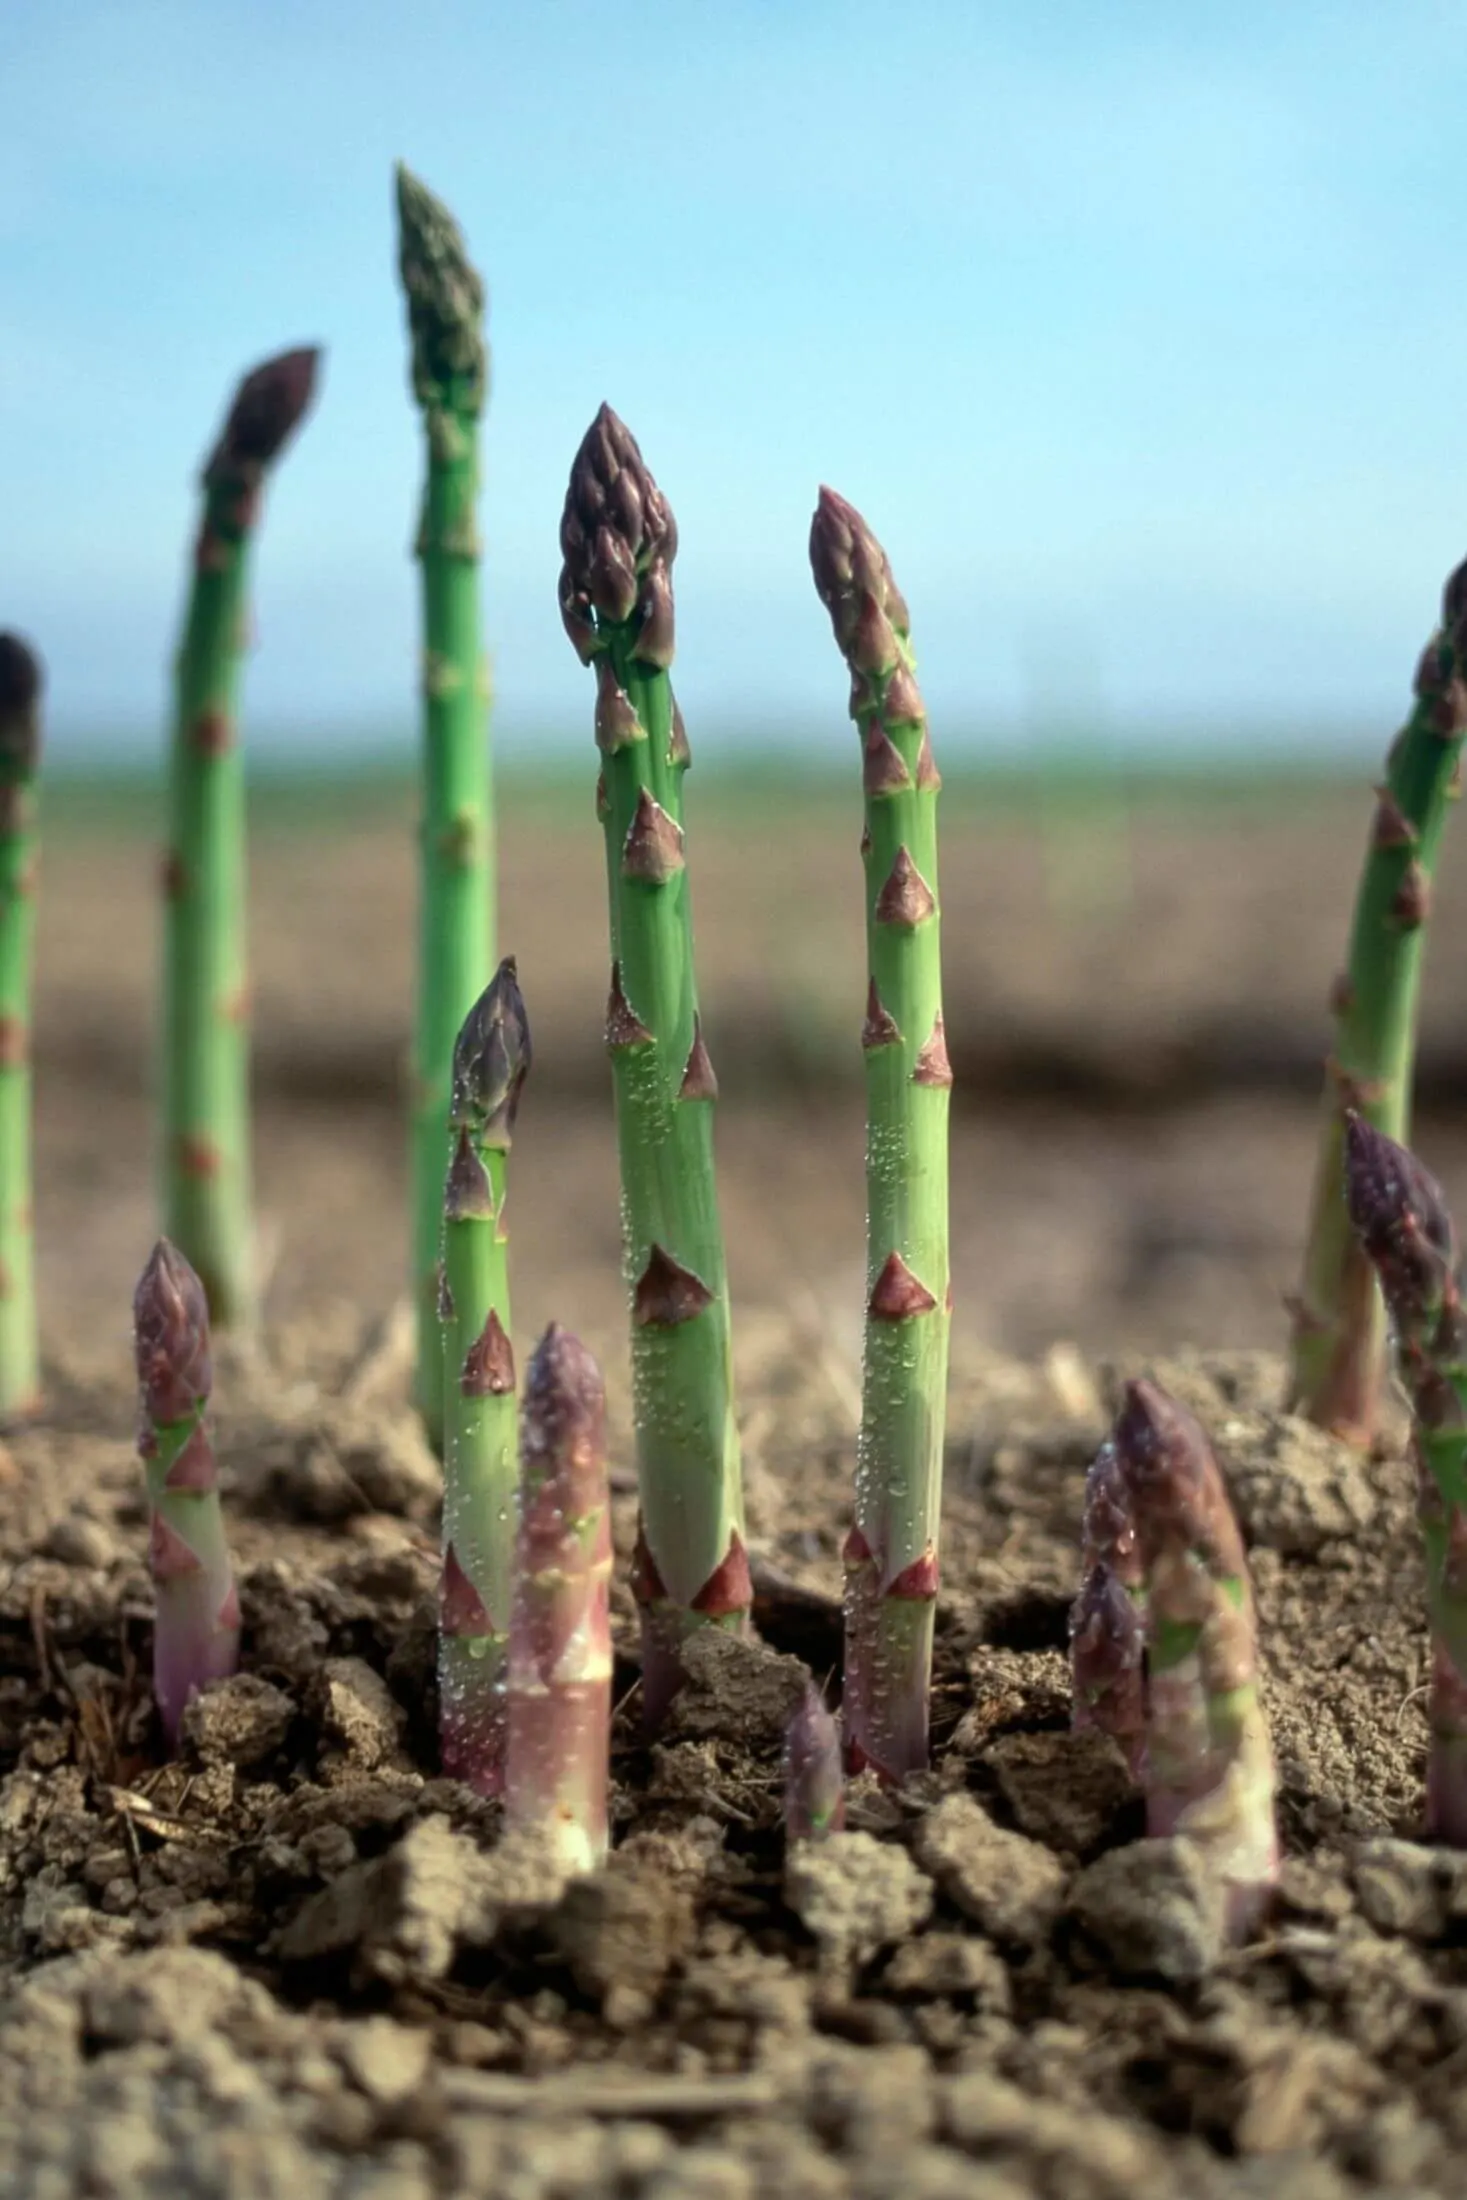 Early season asparagus spears.